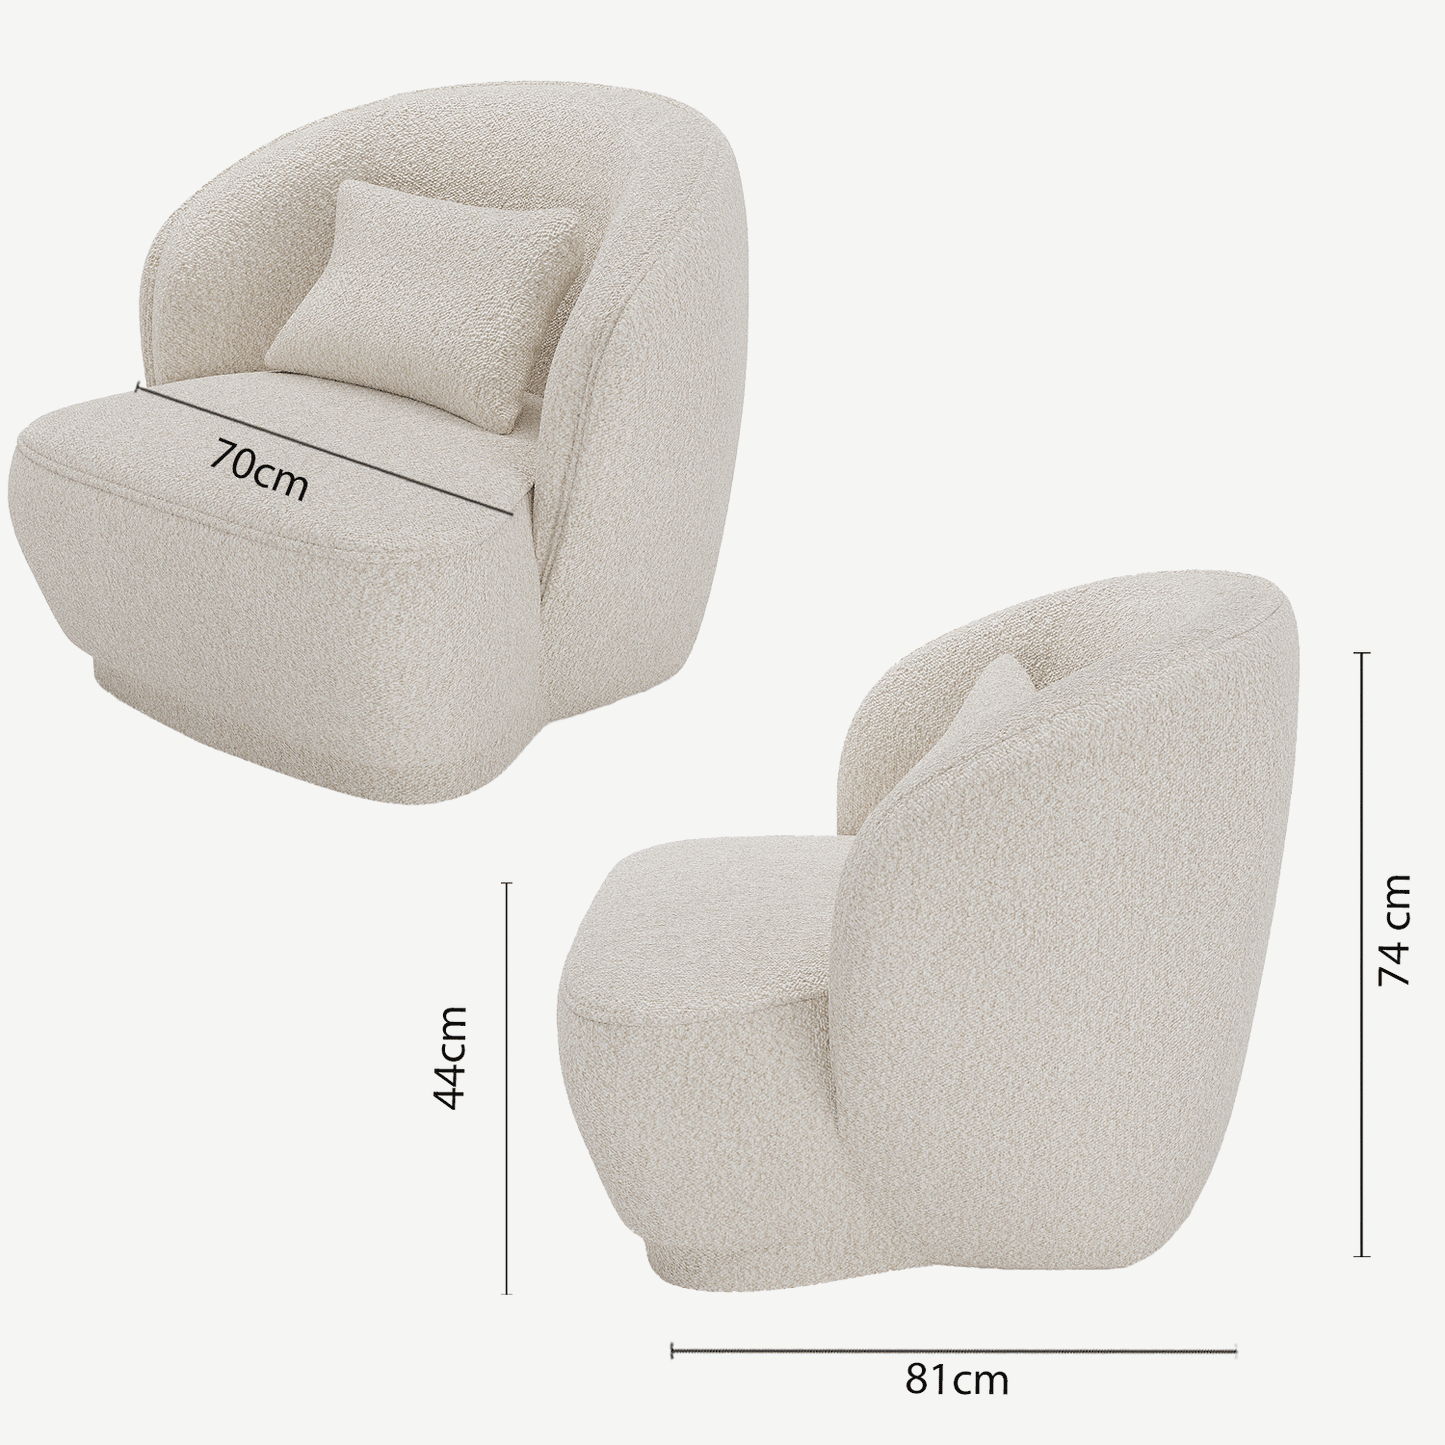 La tendance déco contemporaine est au fauteuil en bouclette grise design organique - Potiron Paris, la satisfaction du fauteuil design et confortable pas cher